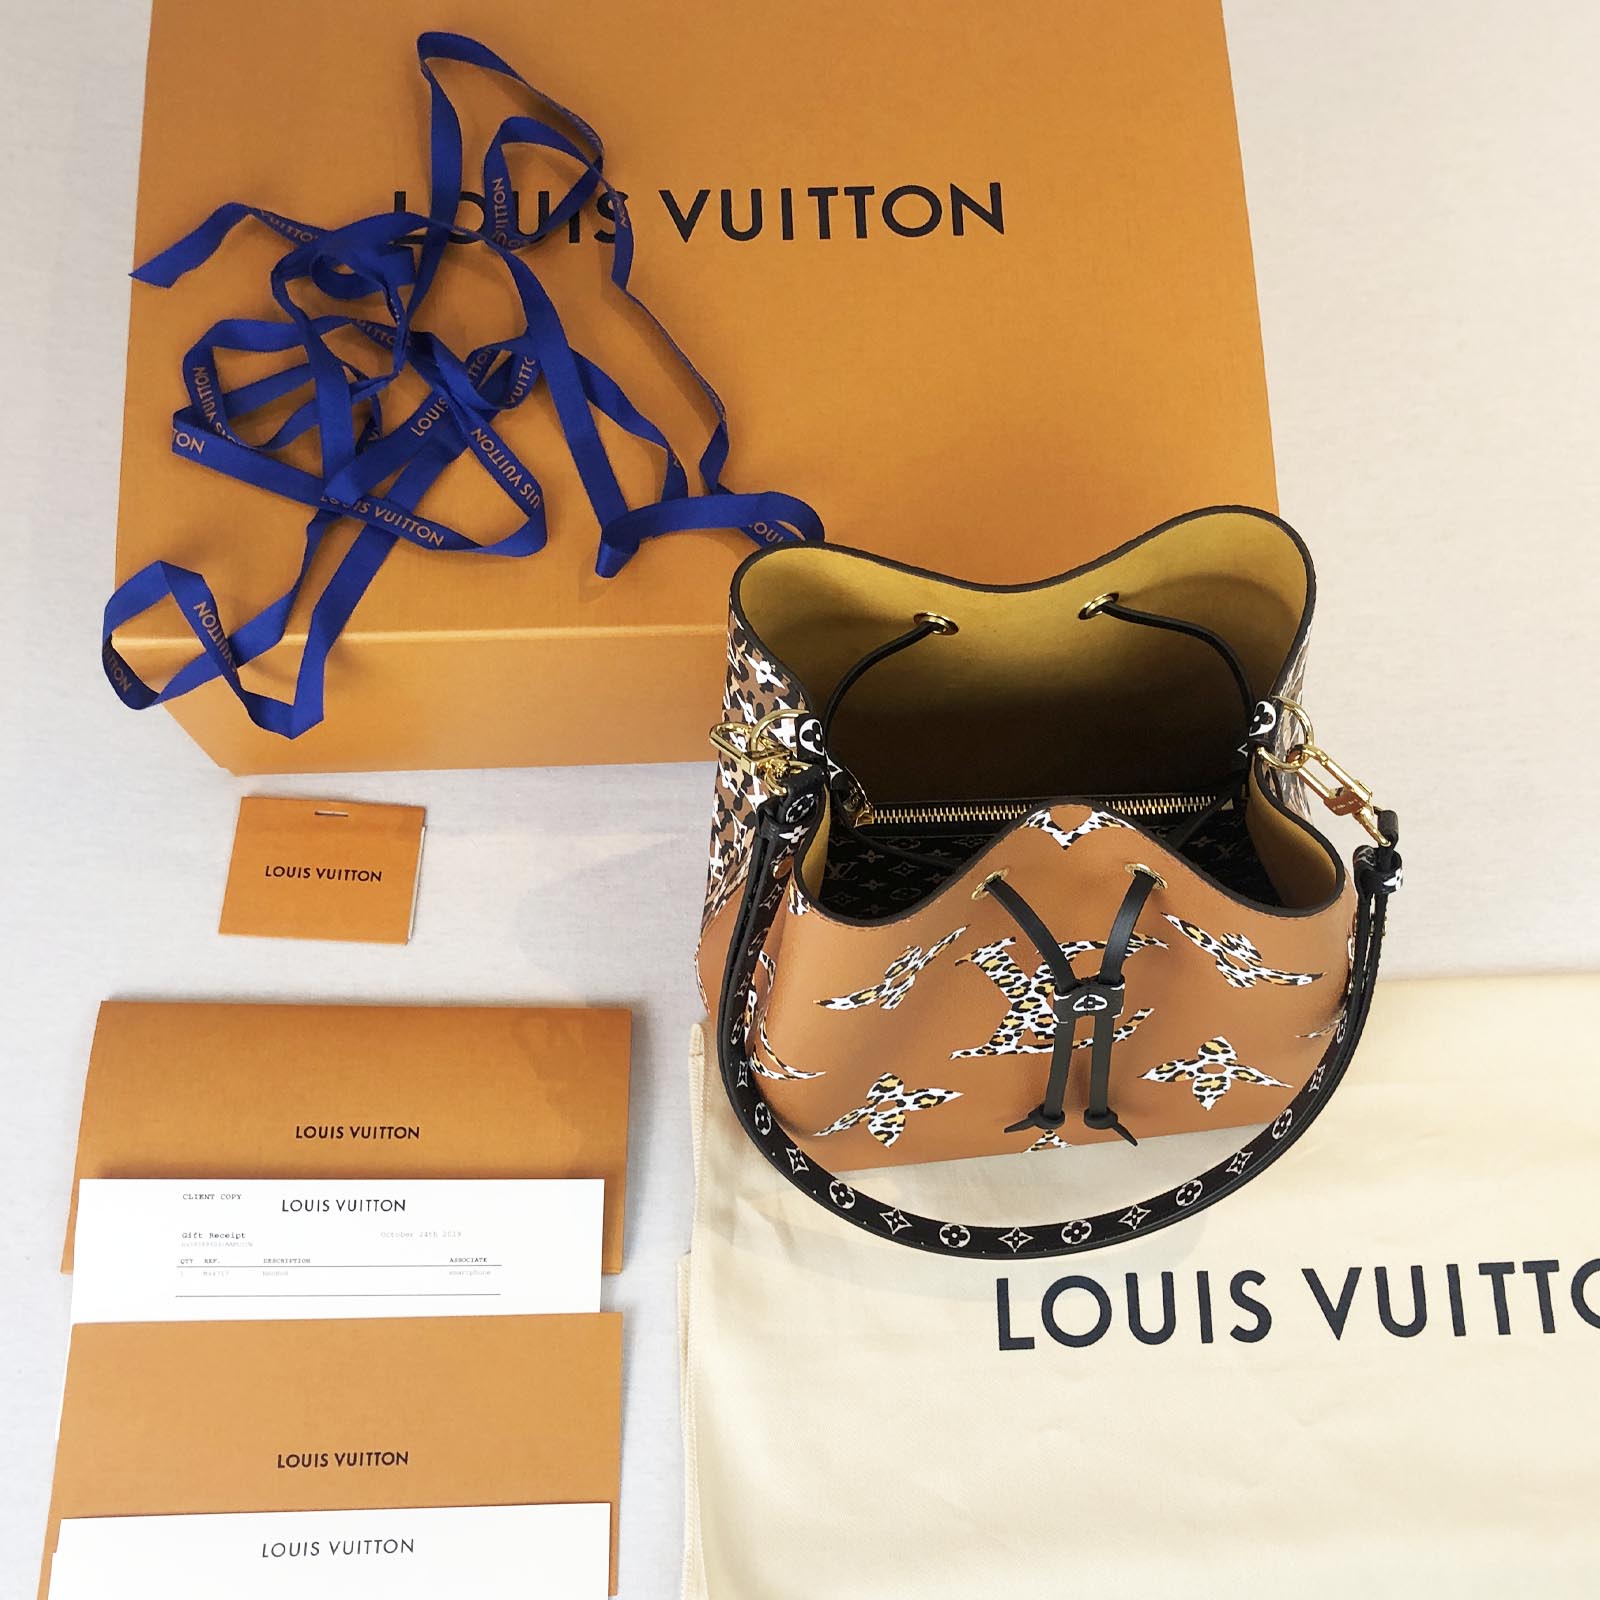 Louis Vuitton Receipt Client Copyright